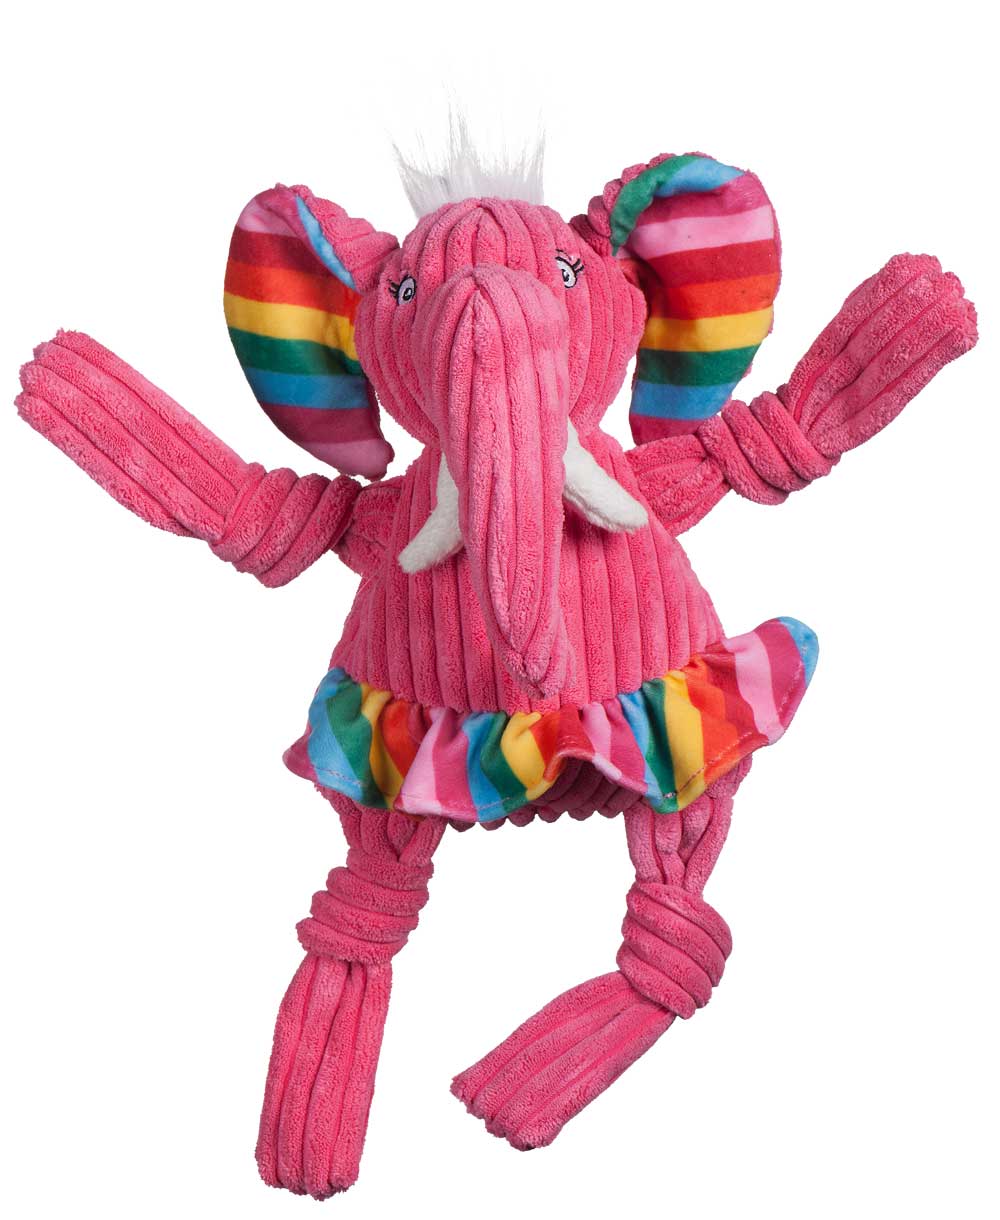 HuggleHounds Dog Toy - Knottie - Rainbow Elephant